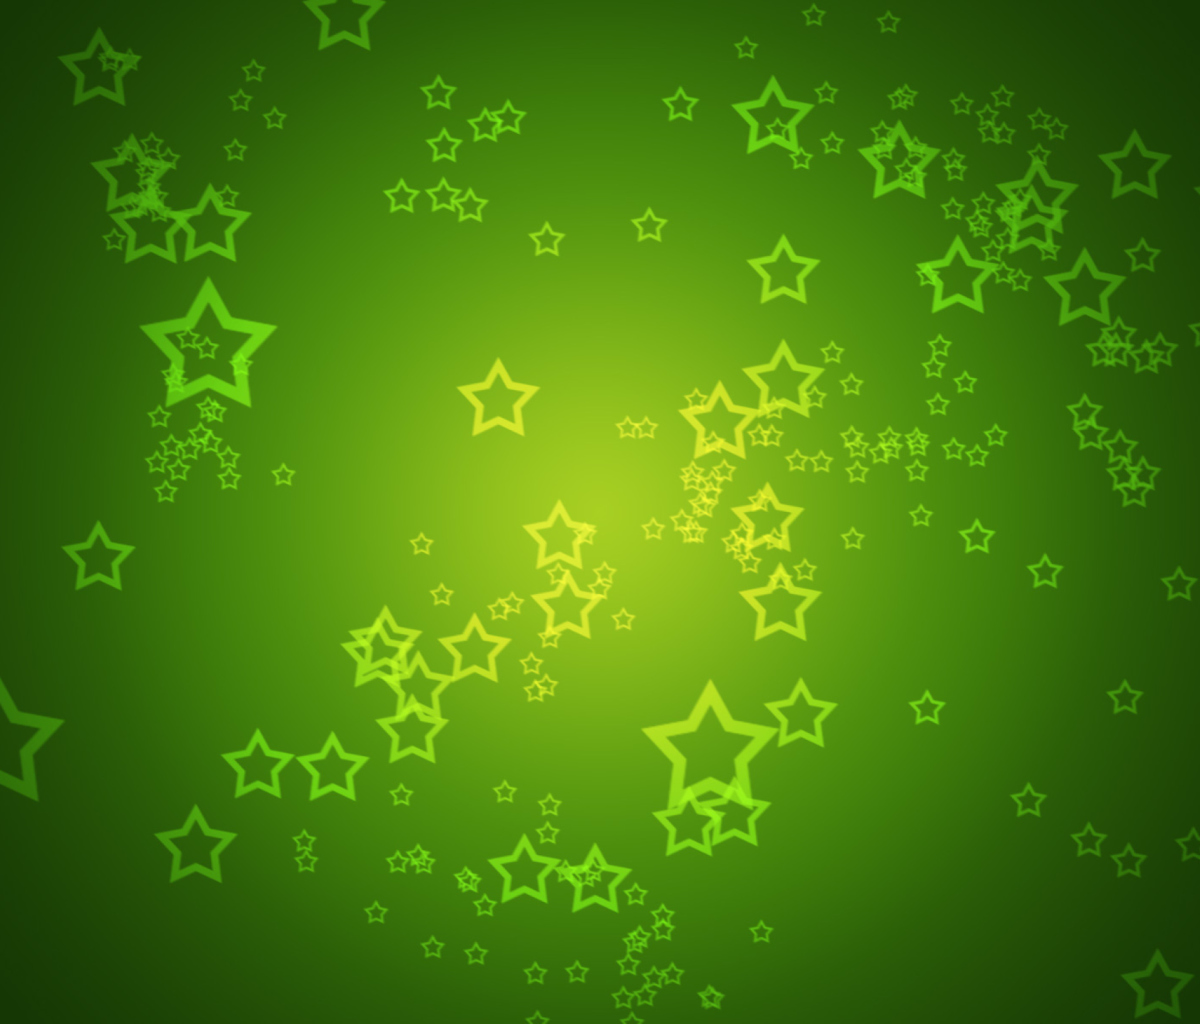 Das Green Stars Wallpaper 1200x1024